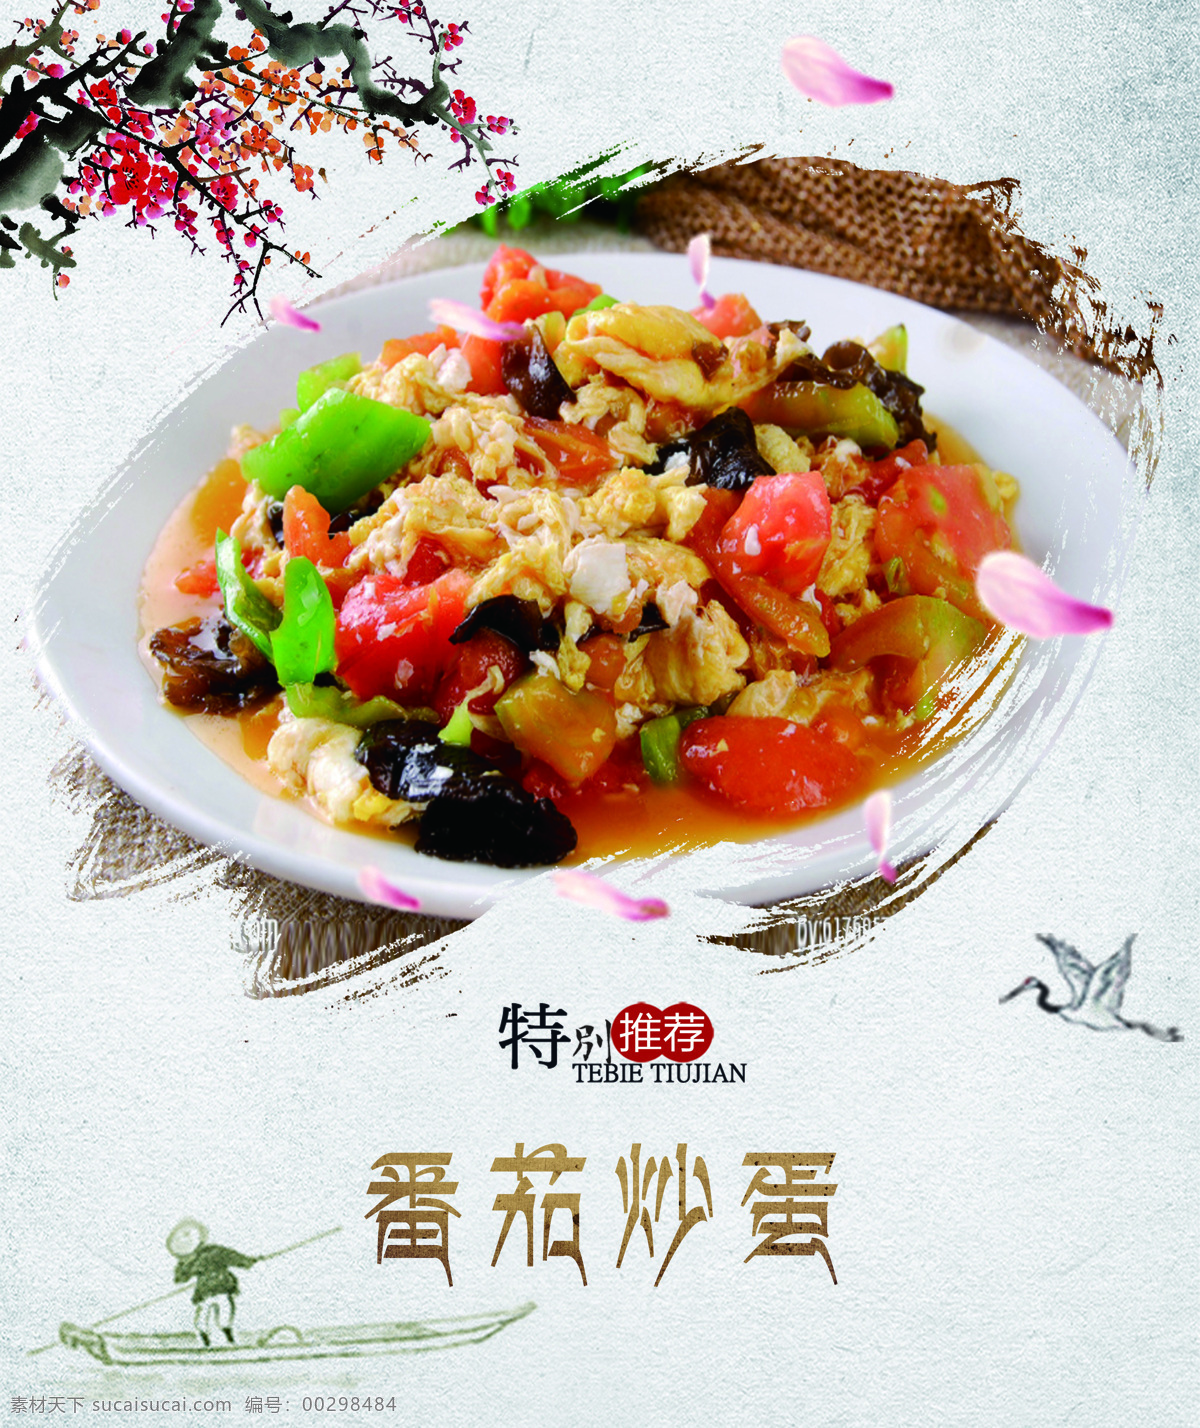 番茄炒蛋 食堂灯箱 菜品 水墨风 中国风 室外广告设计